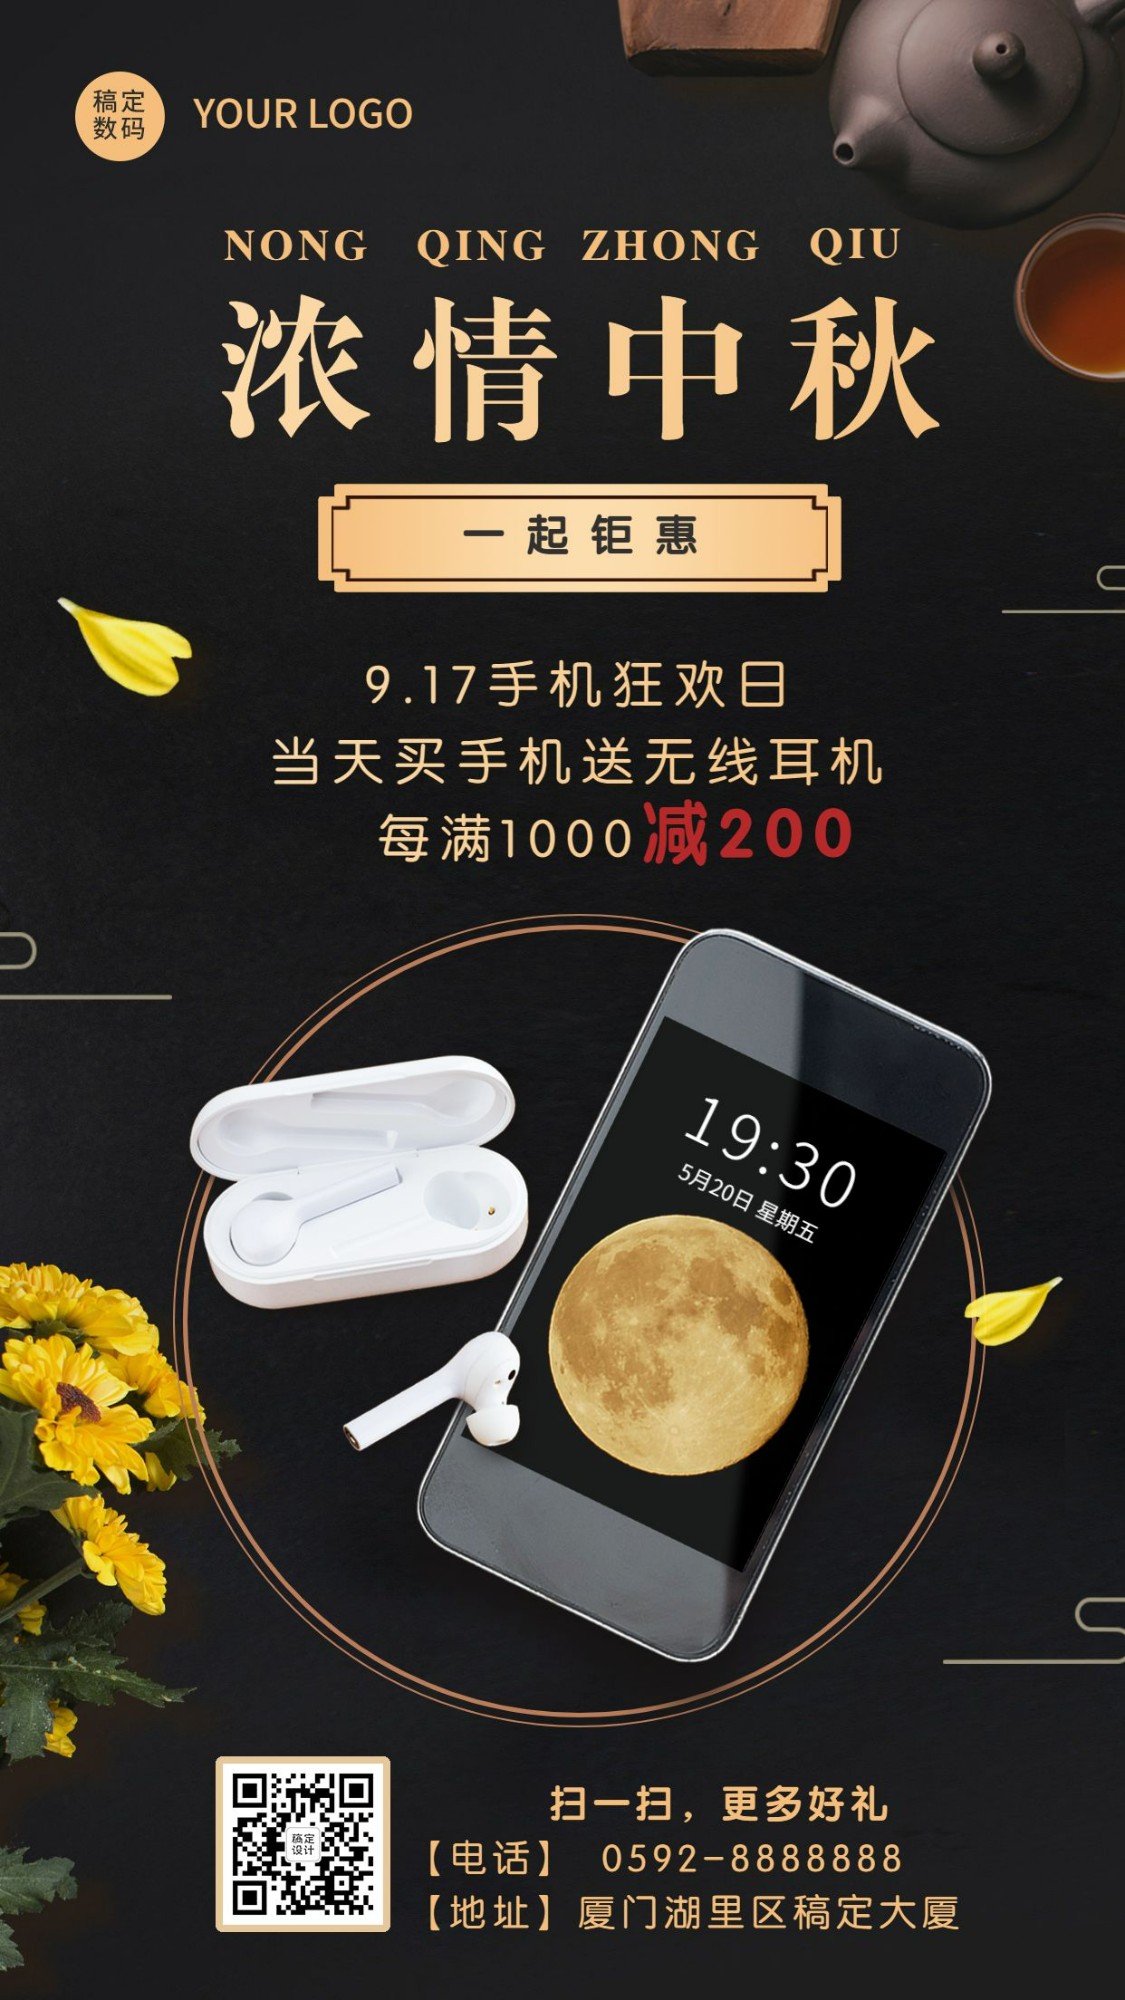 中秋节智能手机产品促销营销海报预览效果